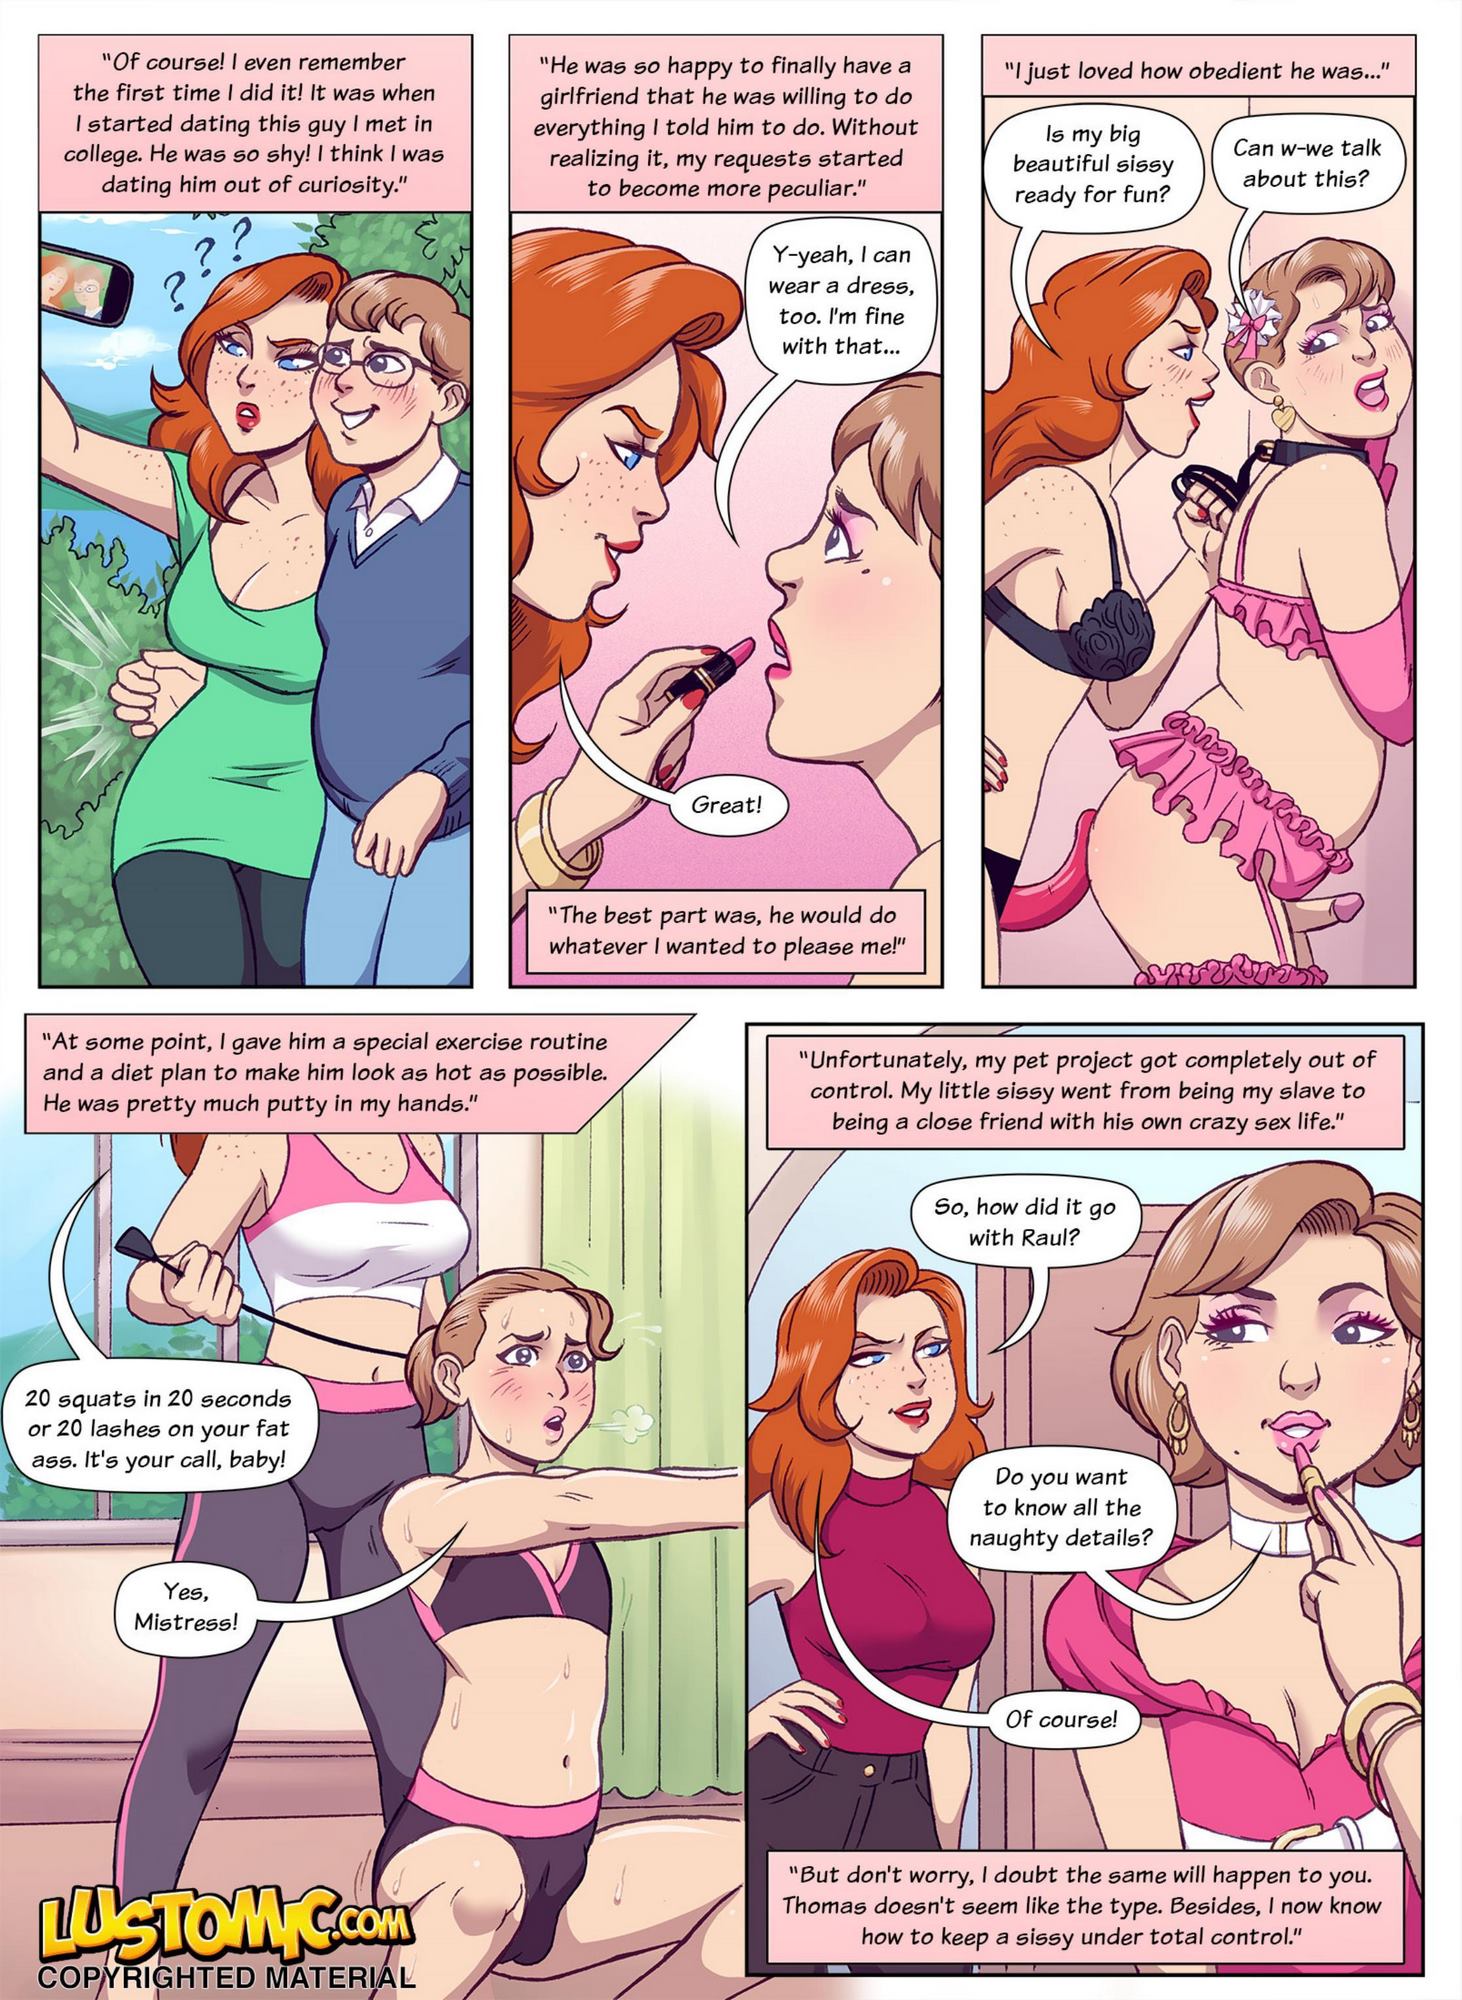 Forced Sissy Cartoon Porn - Anal Forced Feminization Comic | BDSM Fetish